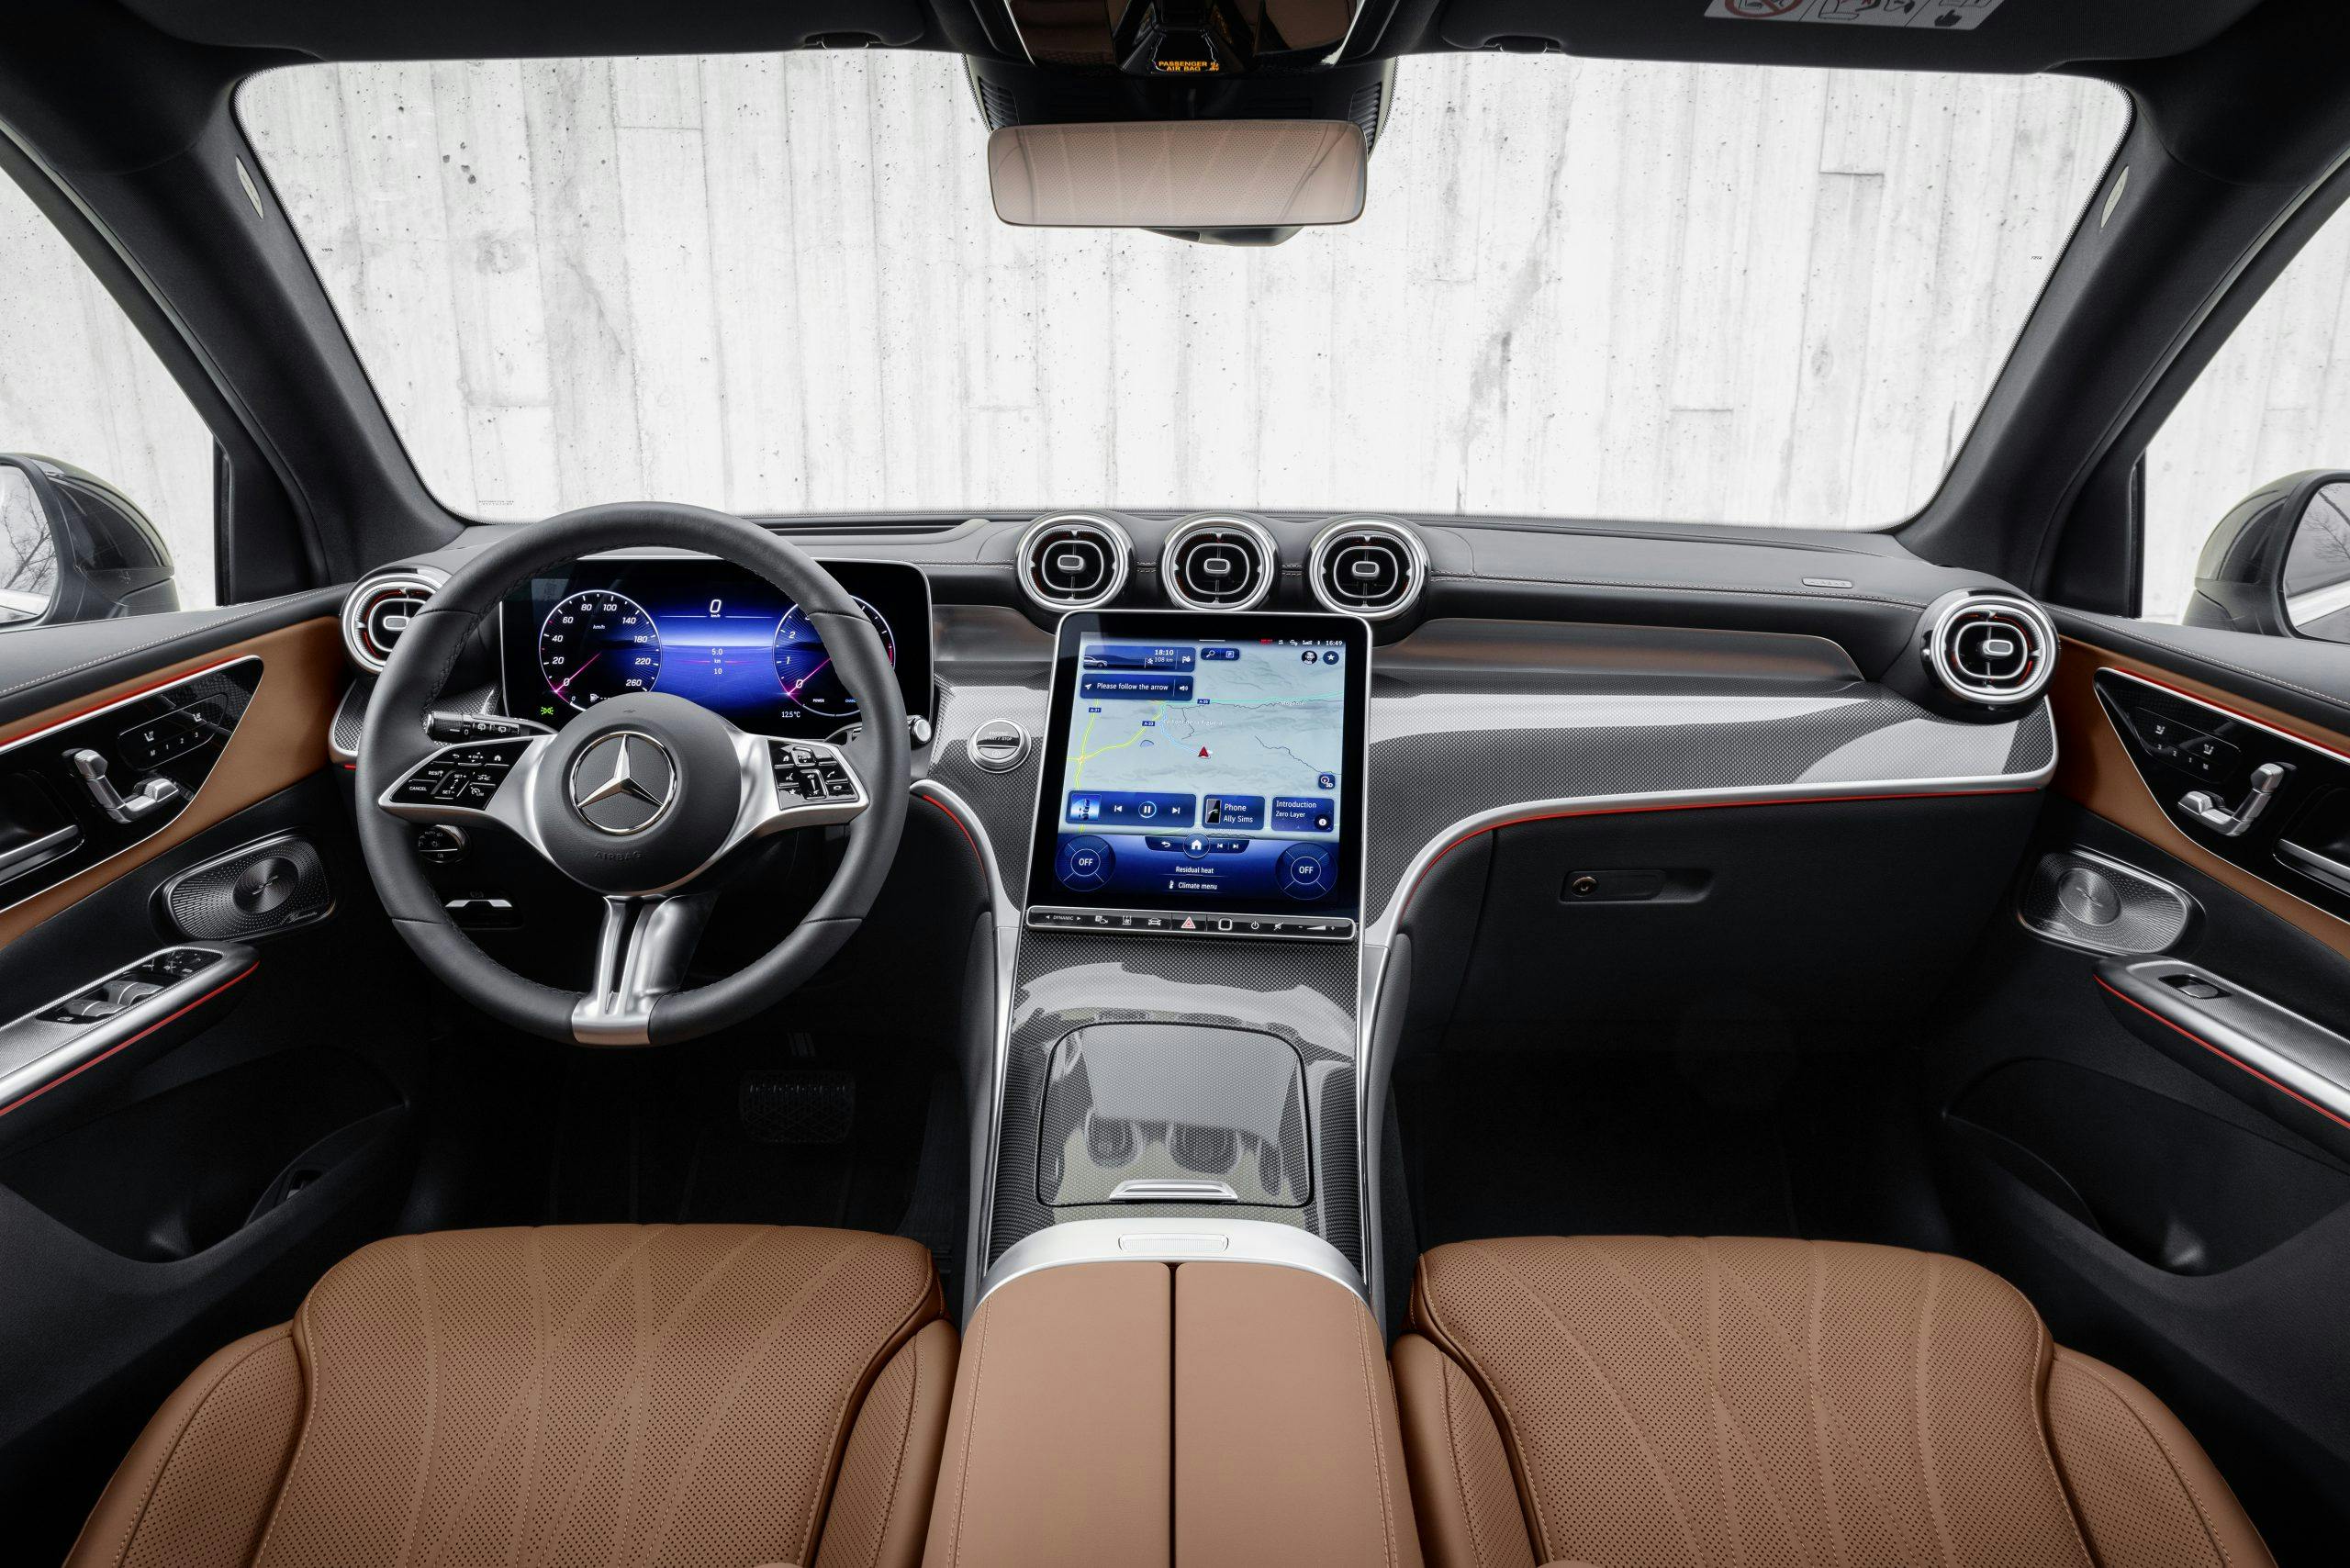 Mercedes-Benz GLC SUV interior front